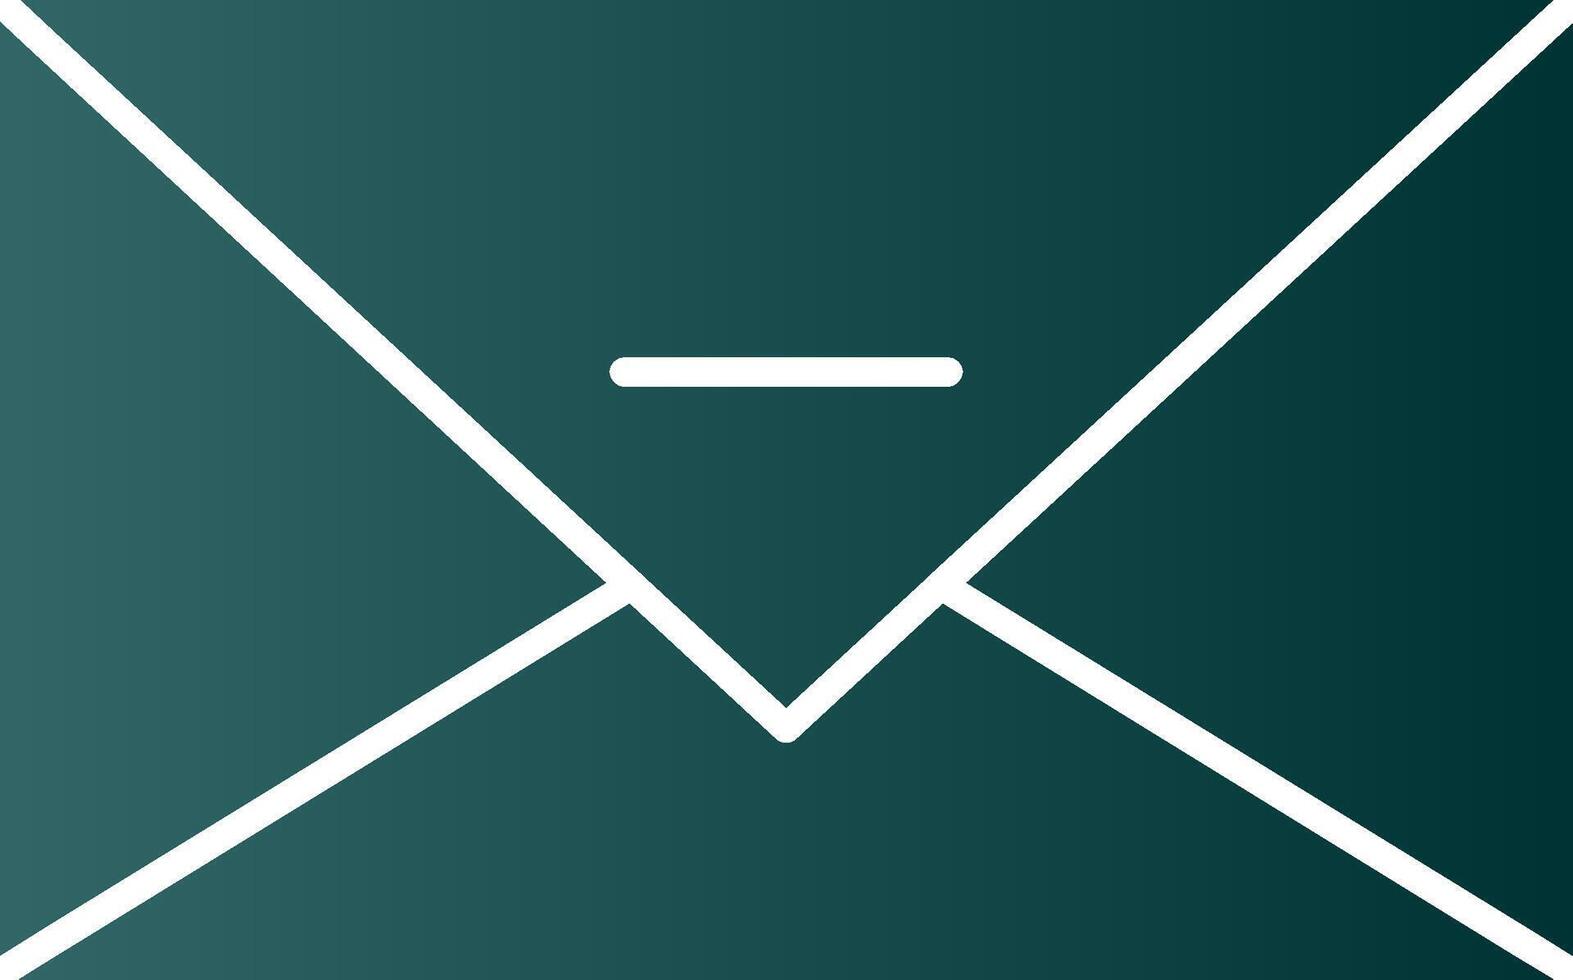 icône de dégradé de glyphe de courrier électronique vecteur